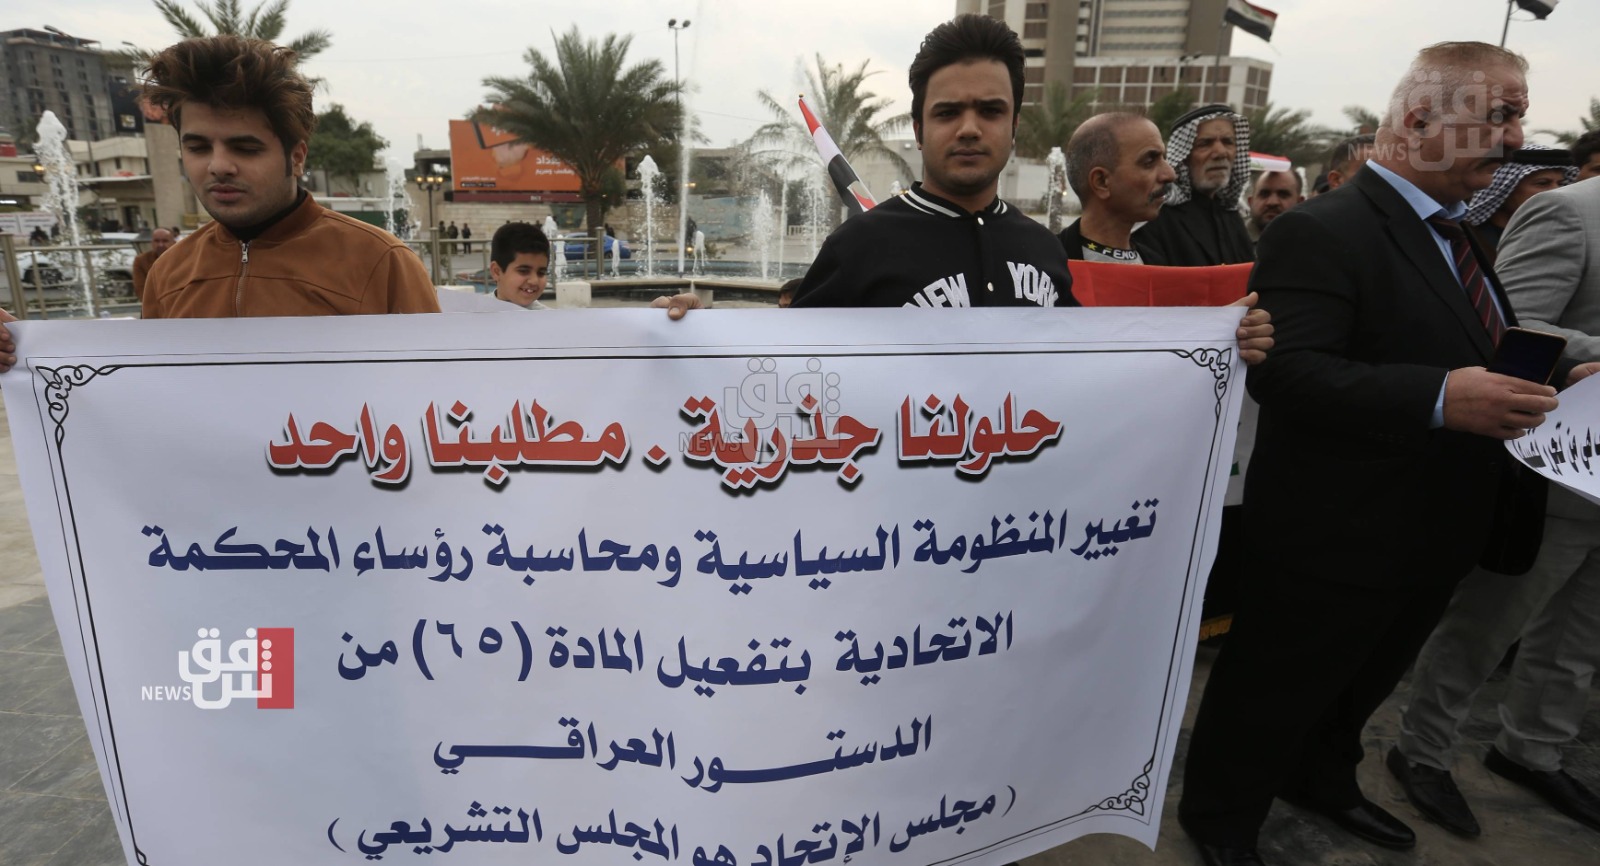 تظاهرات في بغداد تطالب بتغيير المنظومة السياسية ومحاسبة رؤساء المحكمة الاتحادية (صور)